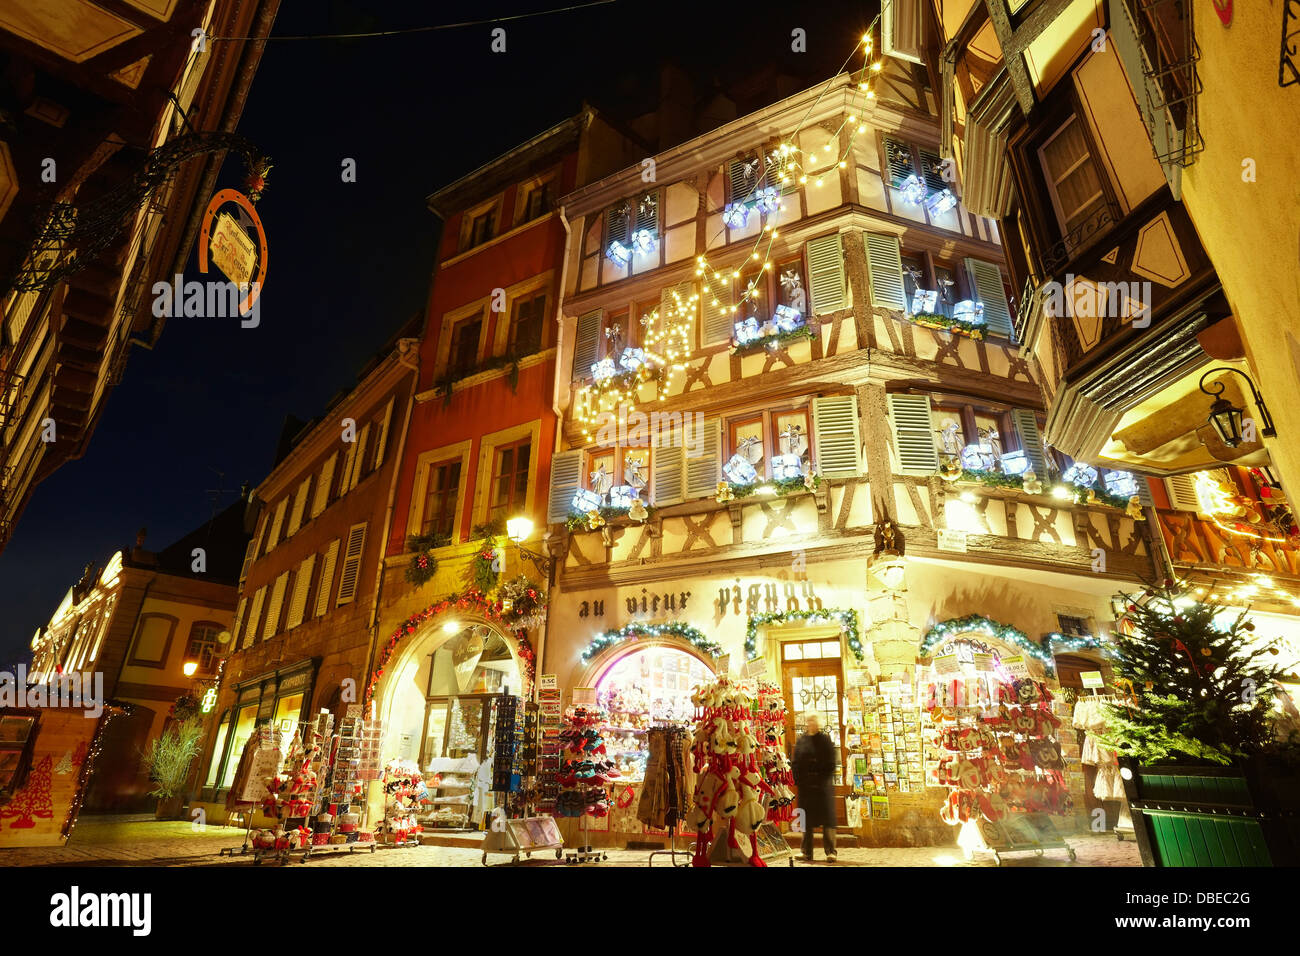 Les lumières de Noël Décoration intérieure au centre de la ville de nuit. Colmar. Route des vins. Haut-Rhin. L'Alsace. France Banque D'Images